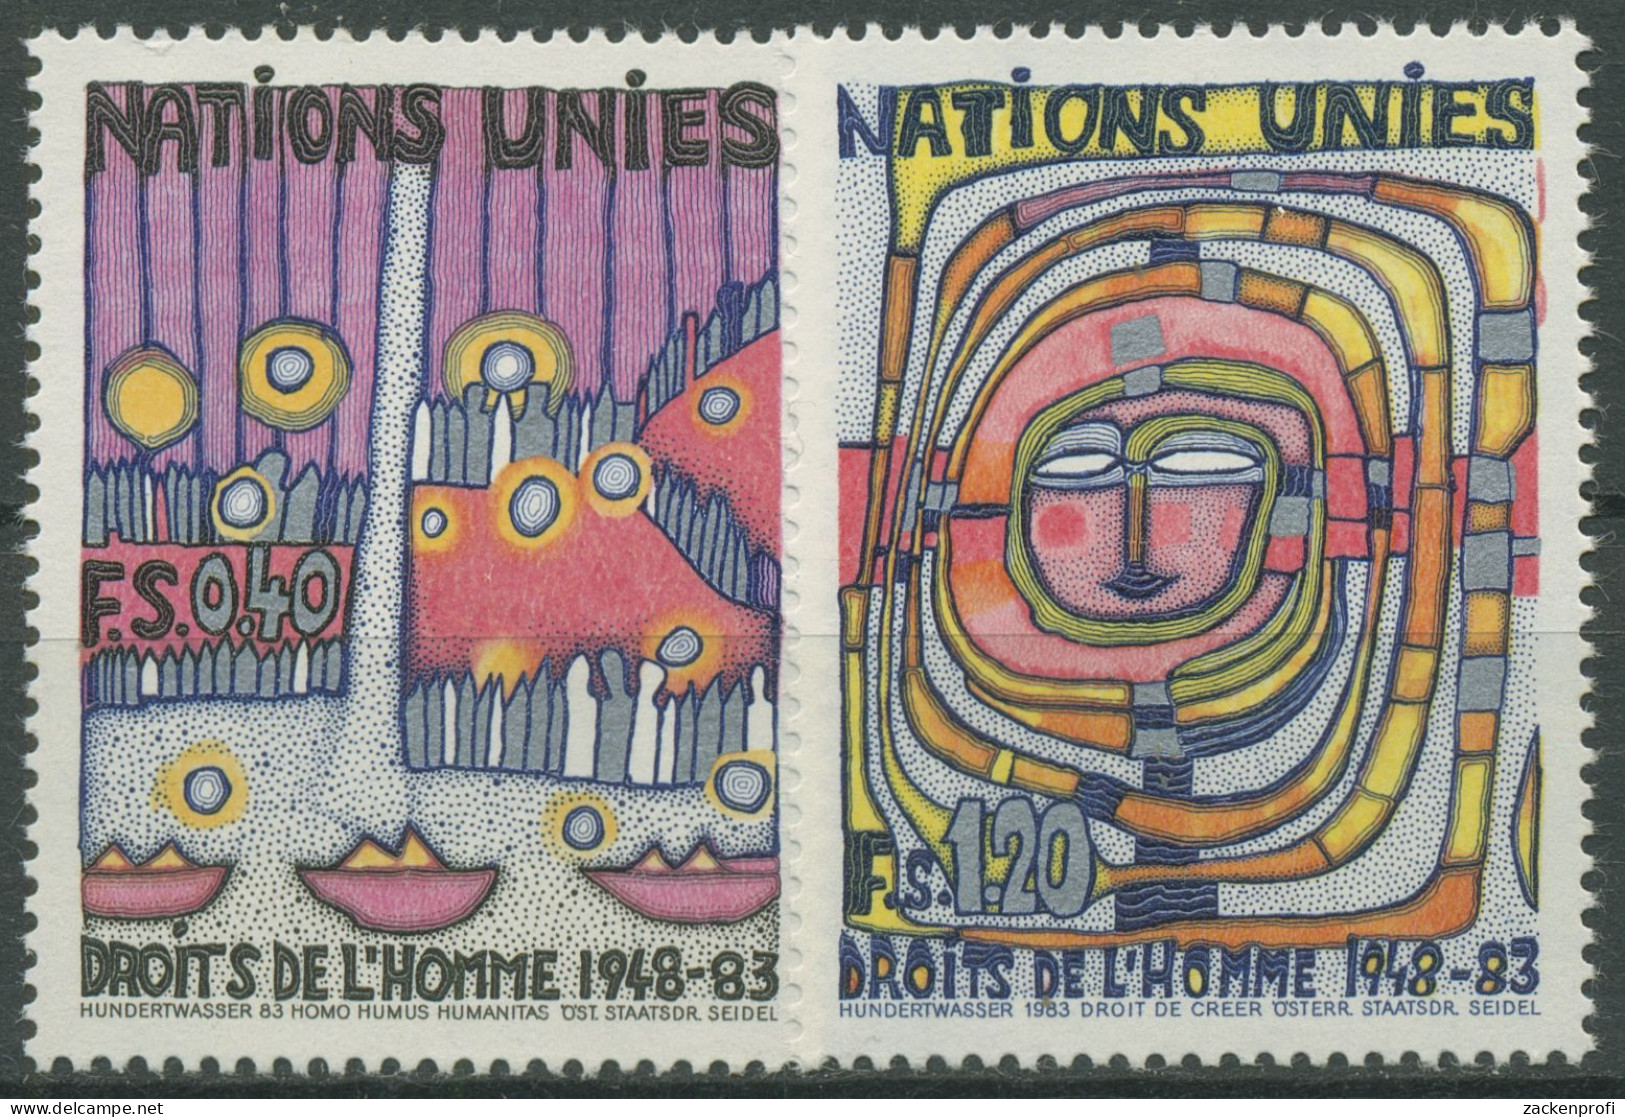 UNO Genf 1983 Erklärung Der Menschrechte Gemälde Hundertwasser 117/18 Postfrisch - Nuevos